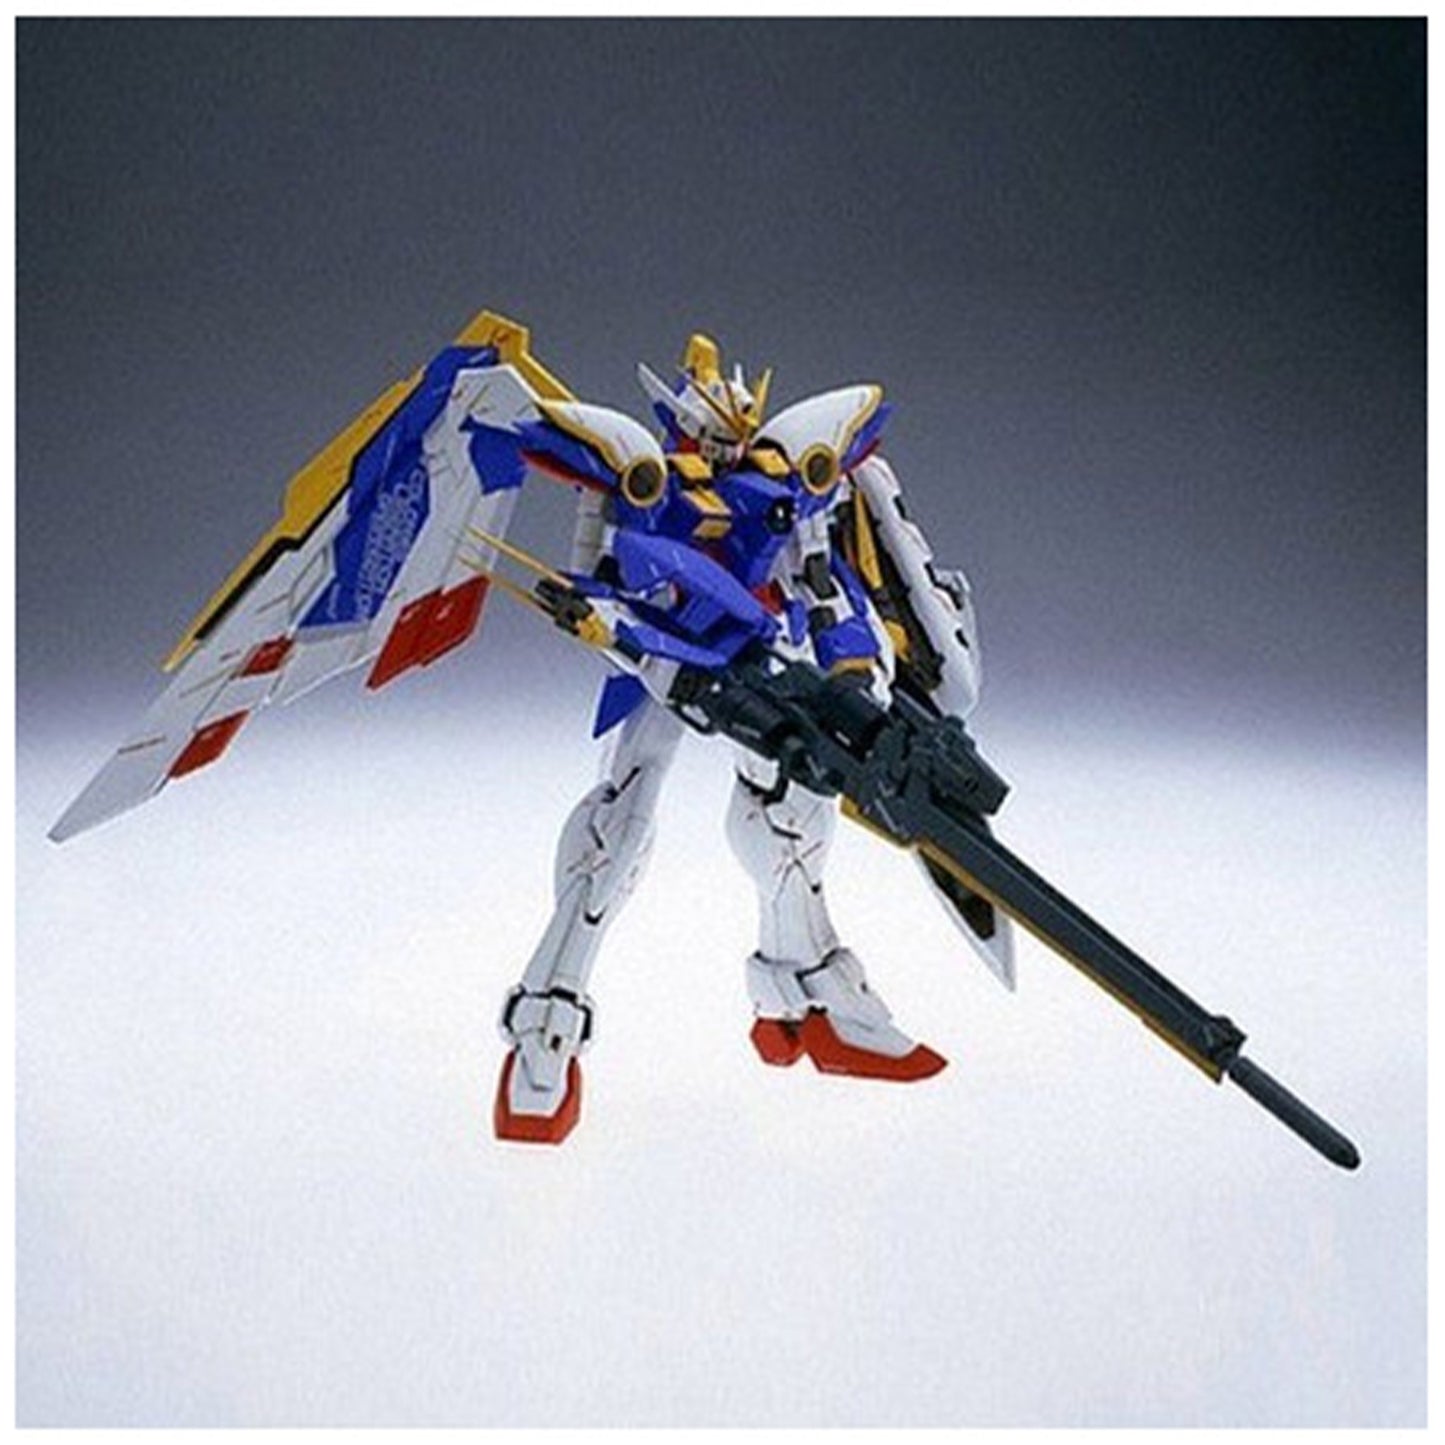 MG 1/100 Wing Gundam Ver. Ka Gunpla Kit